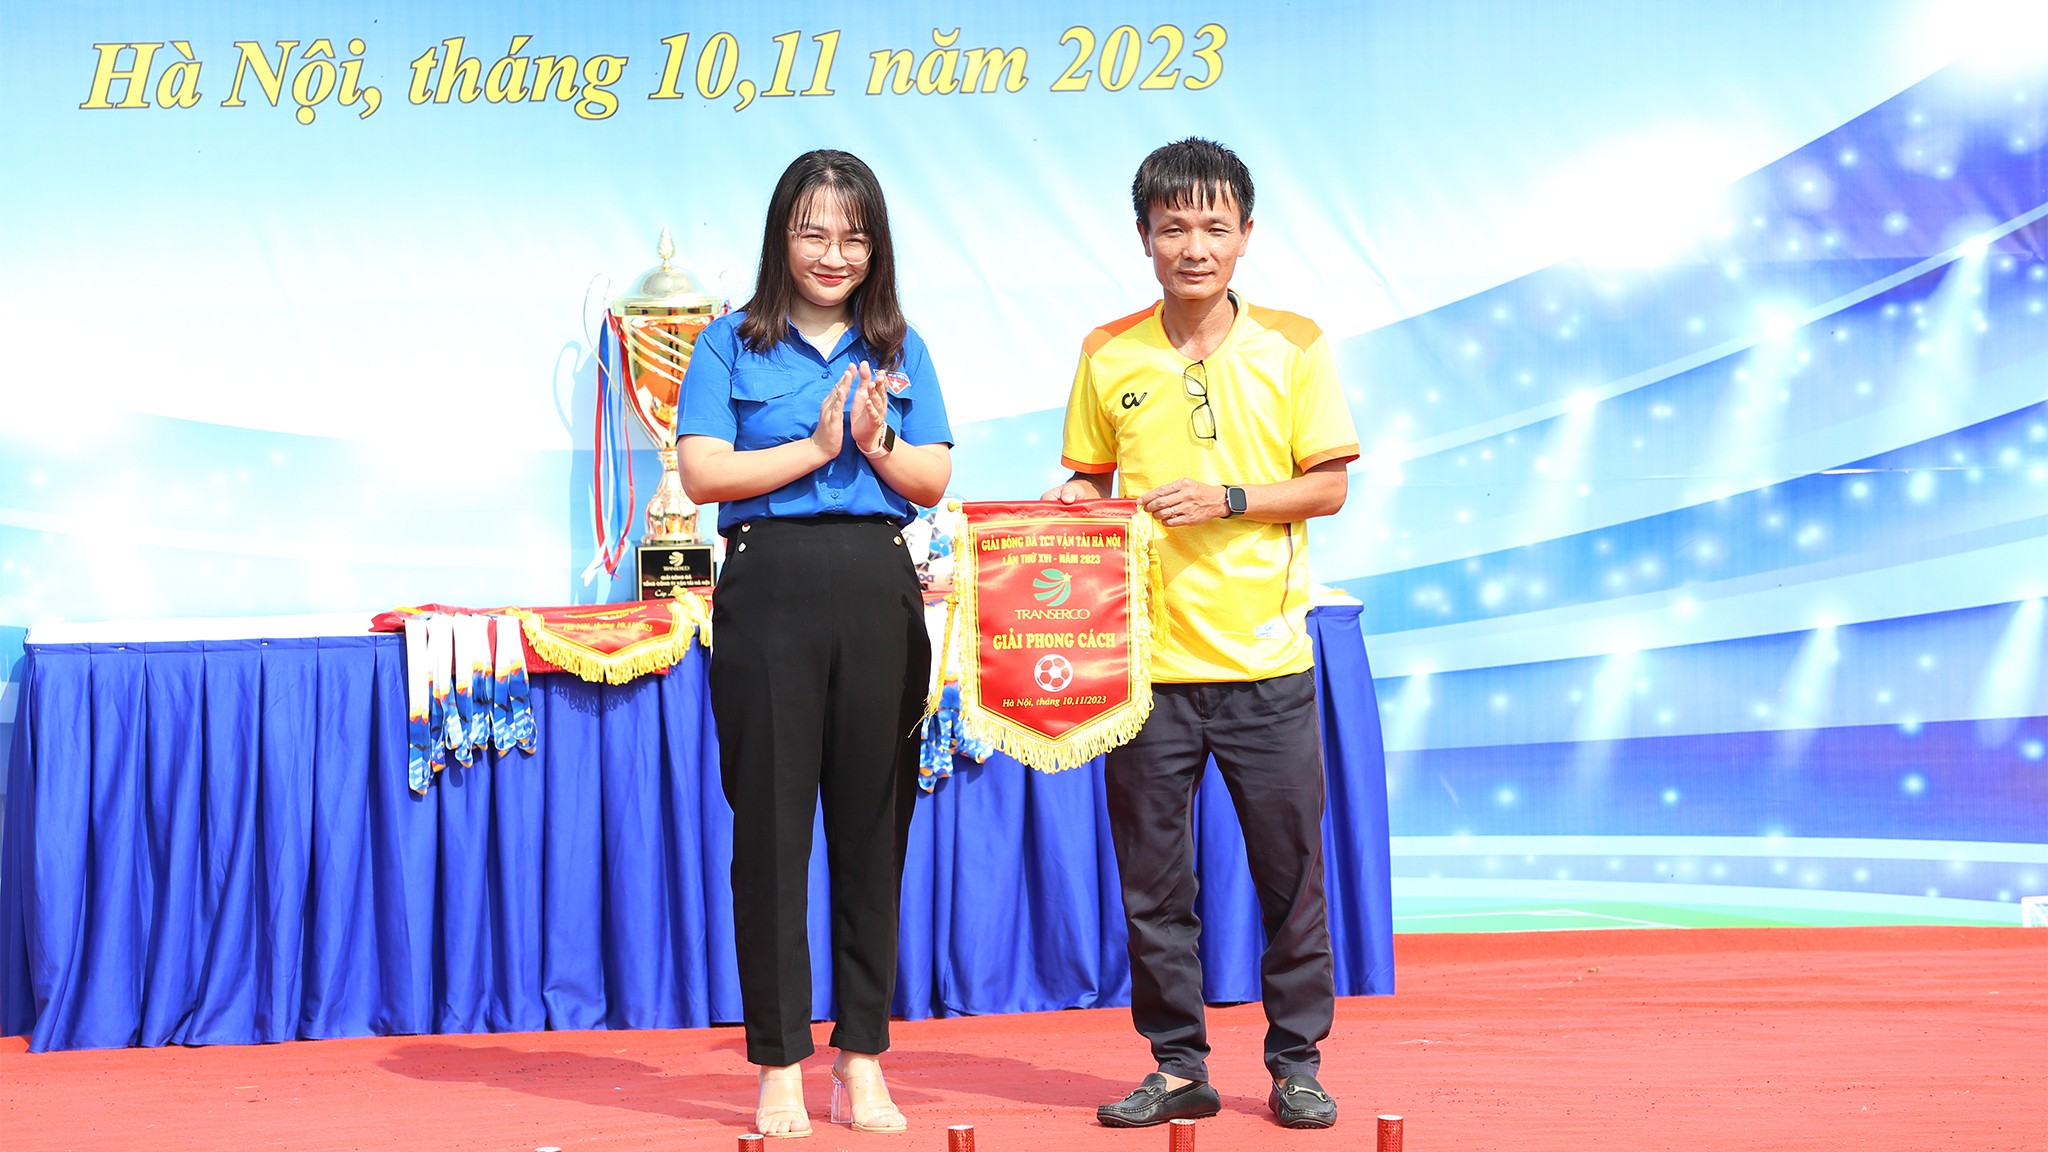 Bí thư Đoàn thanh niên Tổng công ty Vận tải Hà Nội - Nguyễn Hồ trao giải Phong cách cho đội bóng